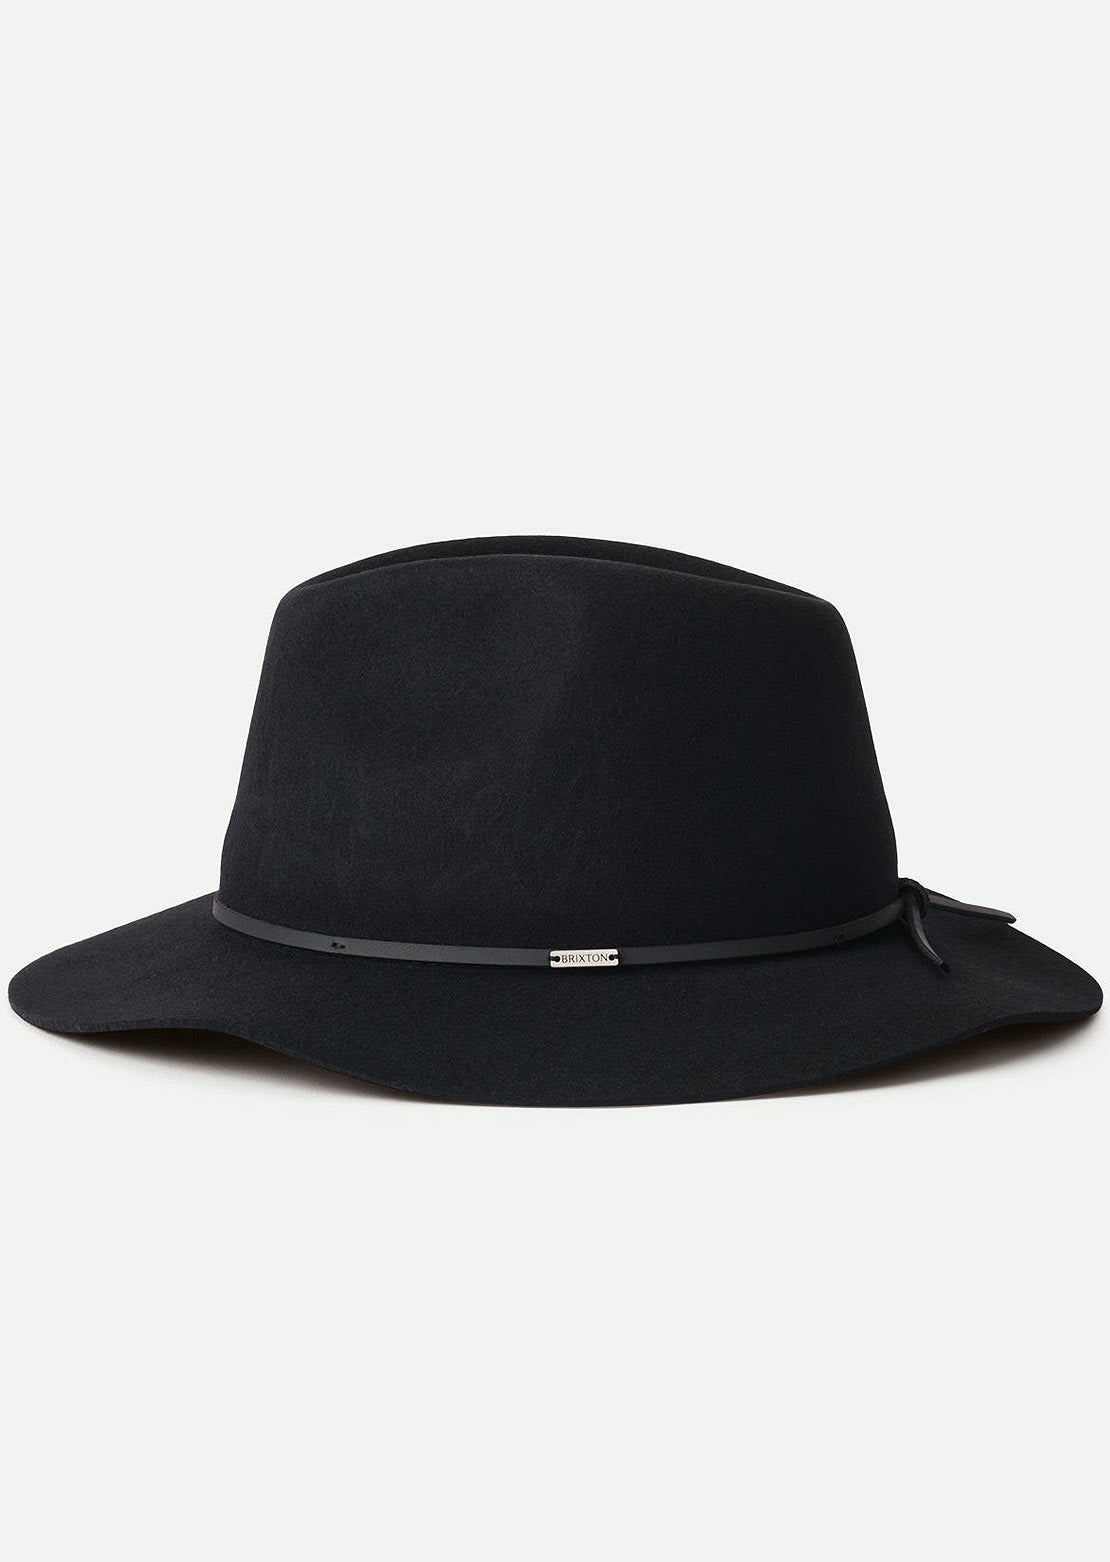 Brixton Unisex Wesley Fedora Hat Black